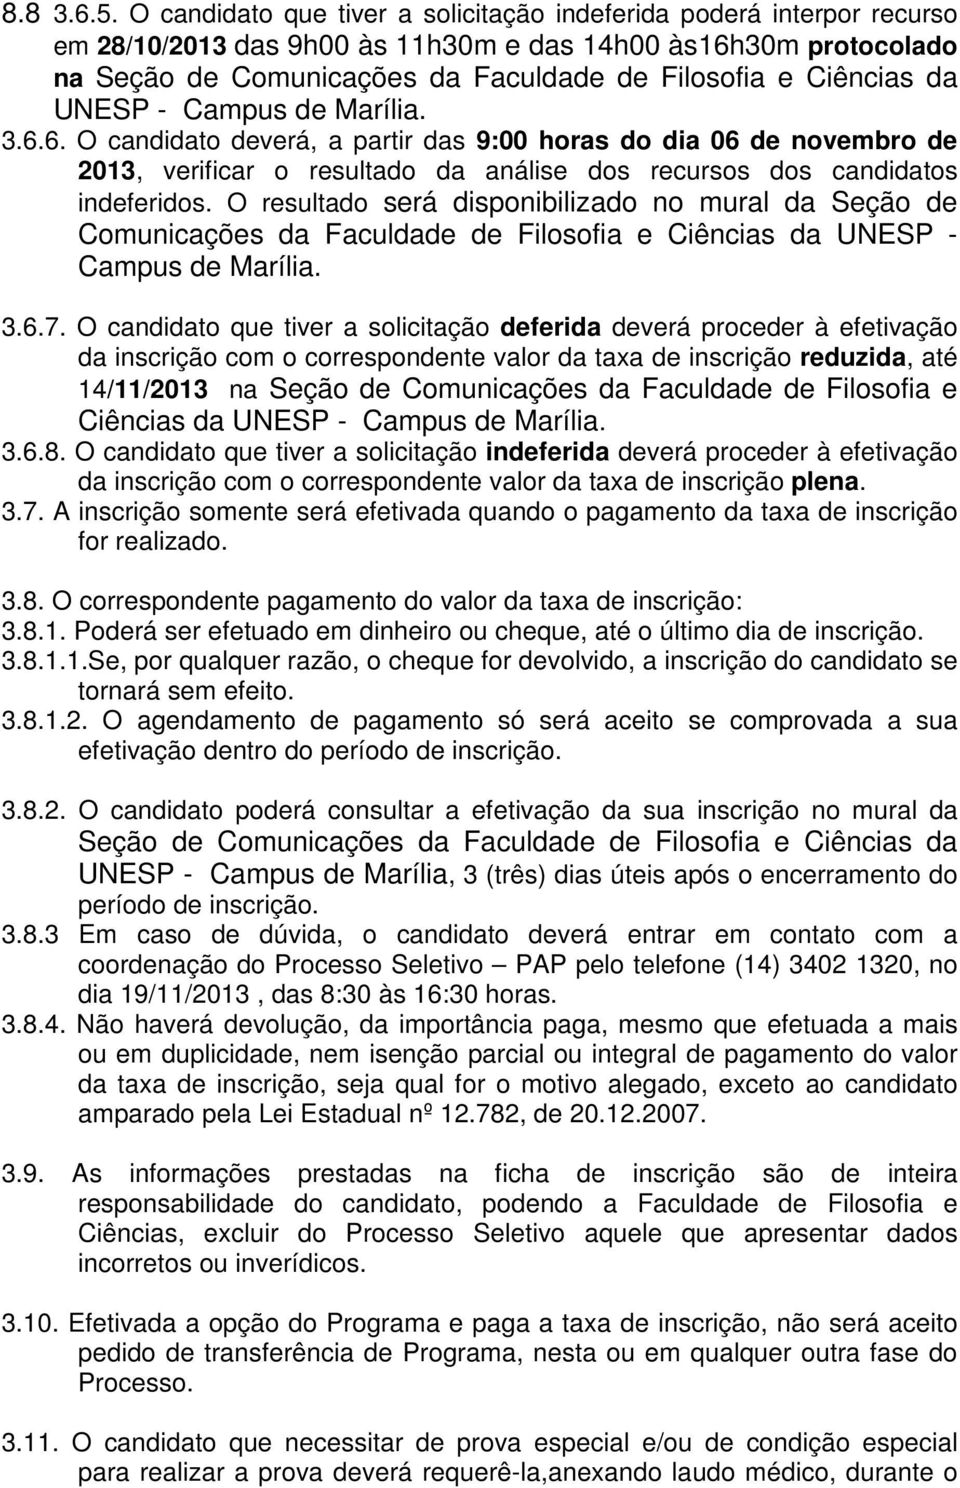 da UNESP - Campus de Marília. 3.6.6. O candidato deverá, a partir das 9:00 horas do dia 06 de novembro de 2013, verificar o resultado da análise dos recursos dos candidatos indeferidos.